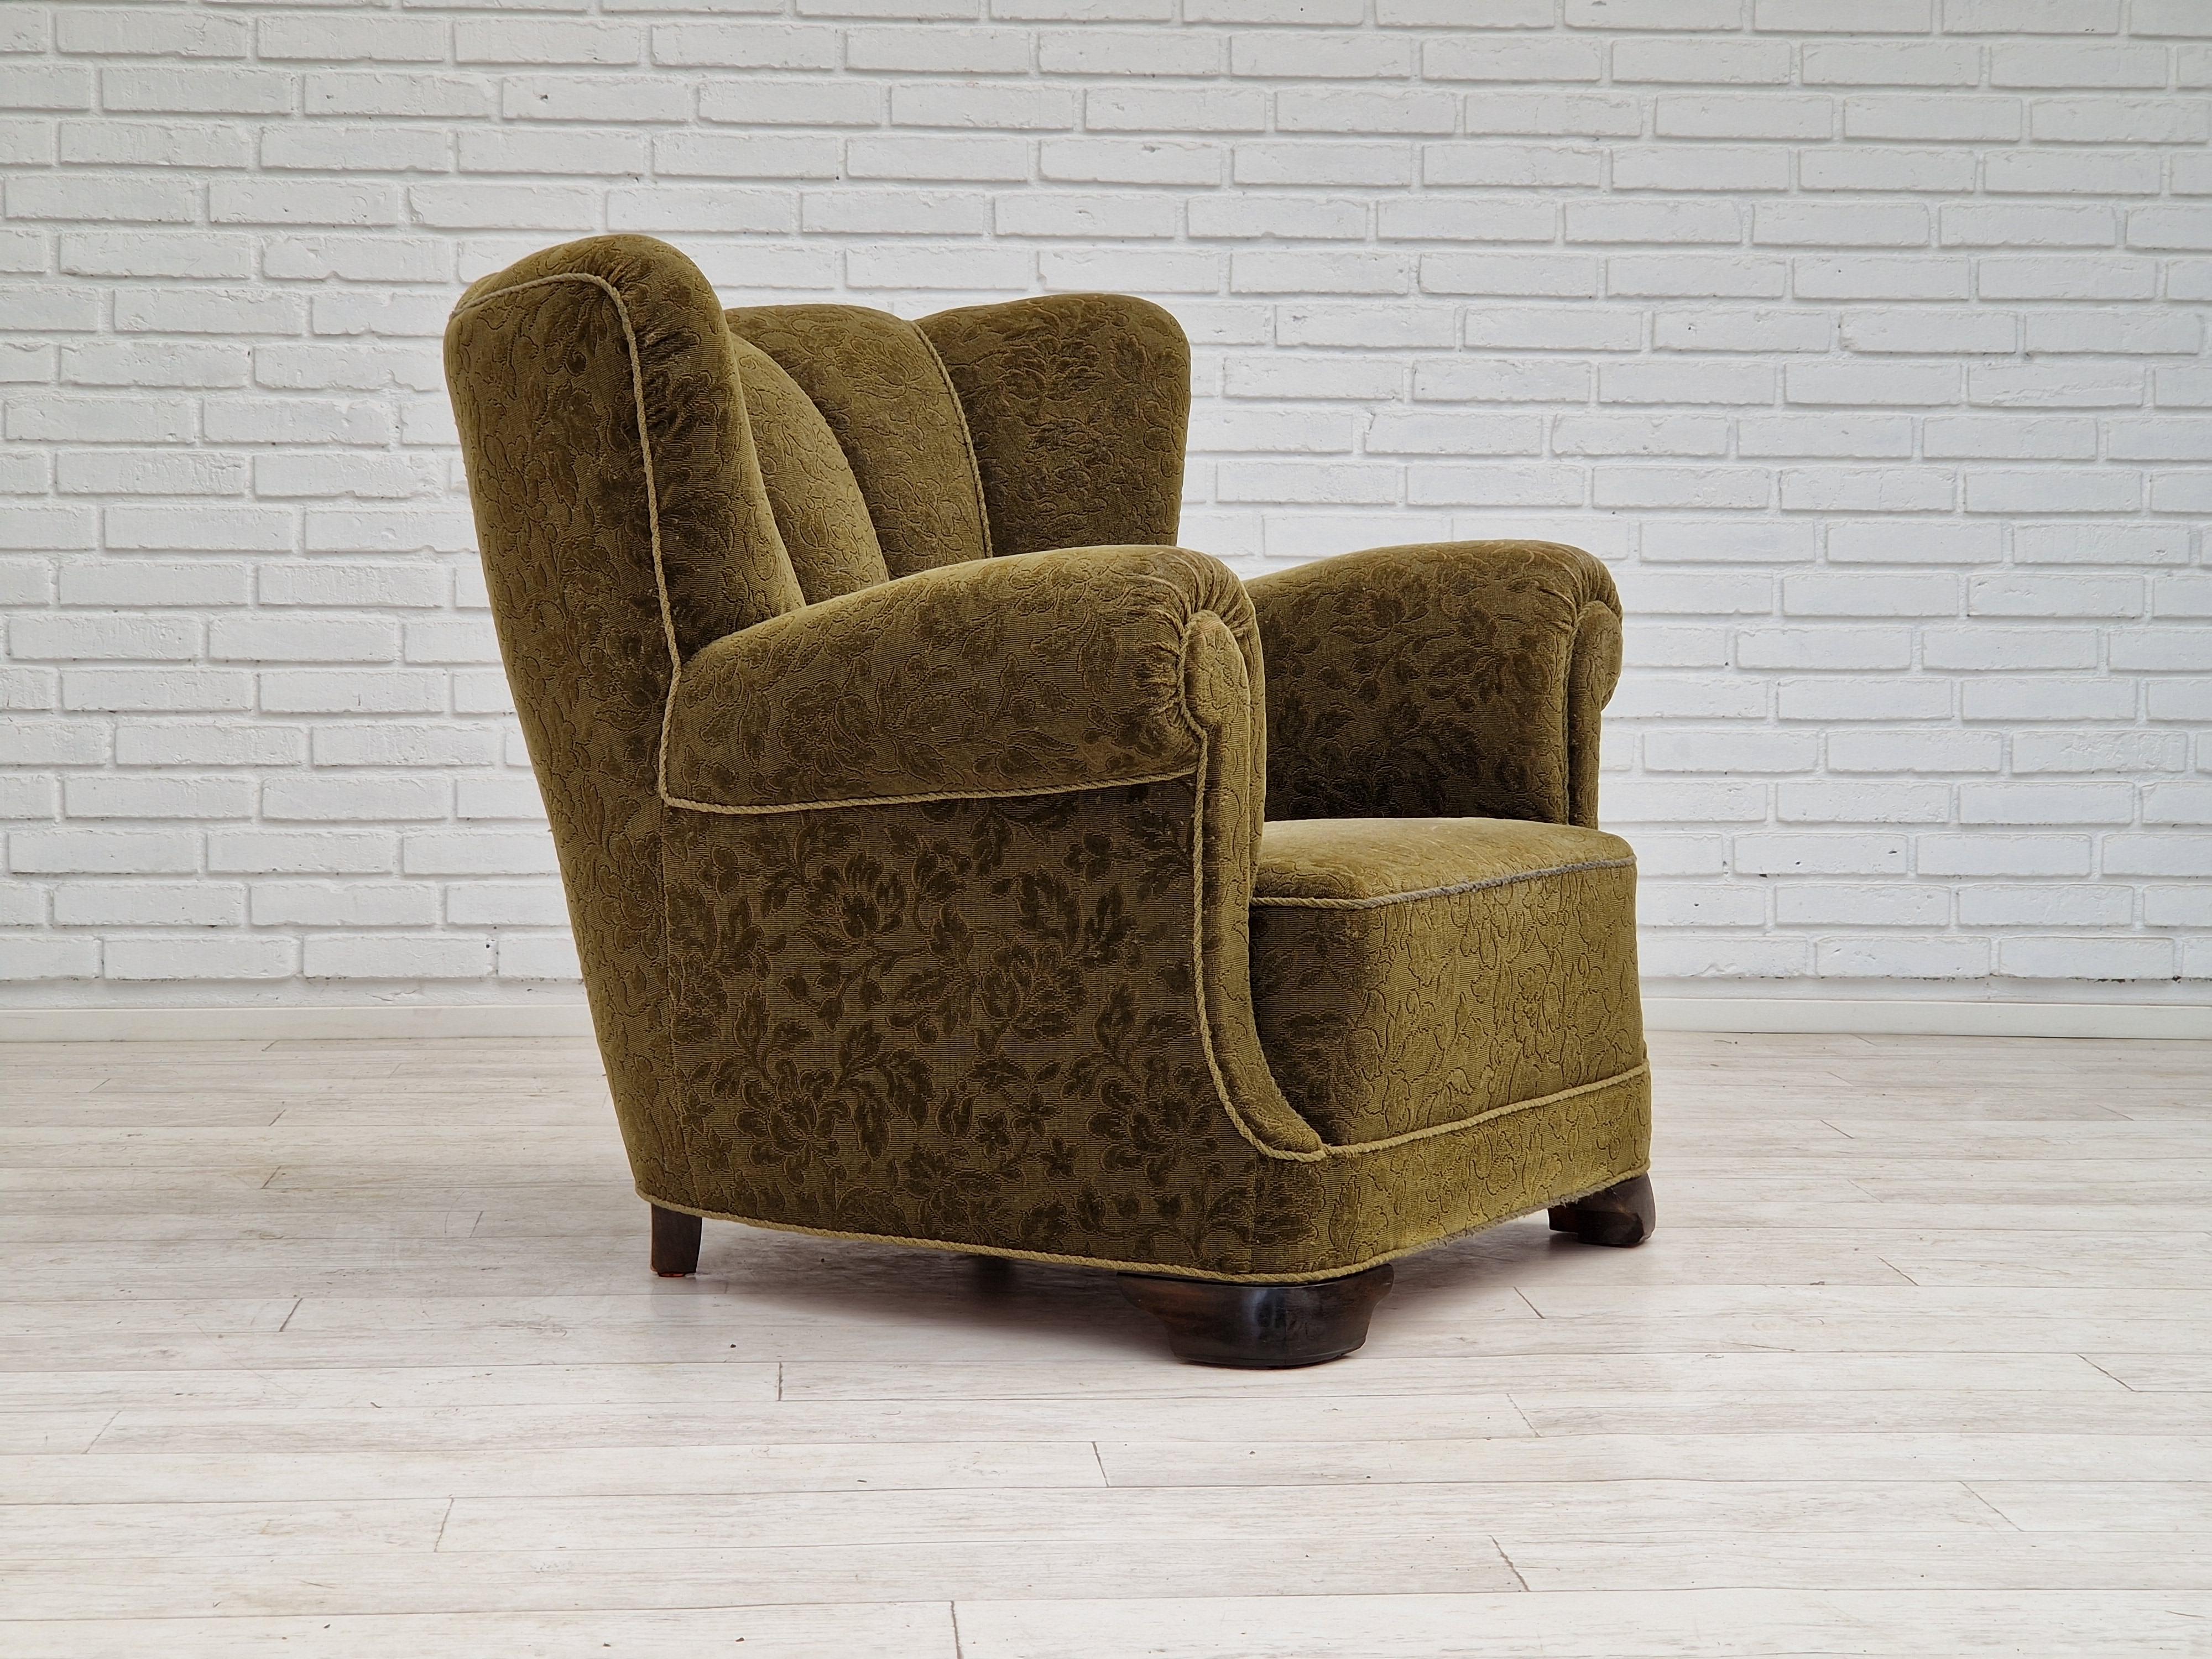 Années 1950, Design/One. Fauteuil relax original en tissu vert. Bon état : pas d'odeurs ni de taches, légère usure/patine sur le dossier et l'accoudoir. Ressorts en laiton dans le siège. Fabriqué par un fabricant de meubles danois vers 1950-55.